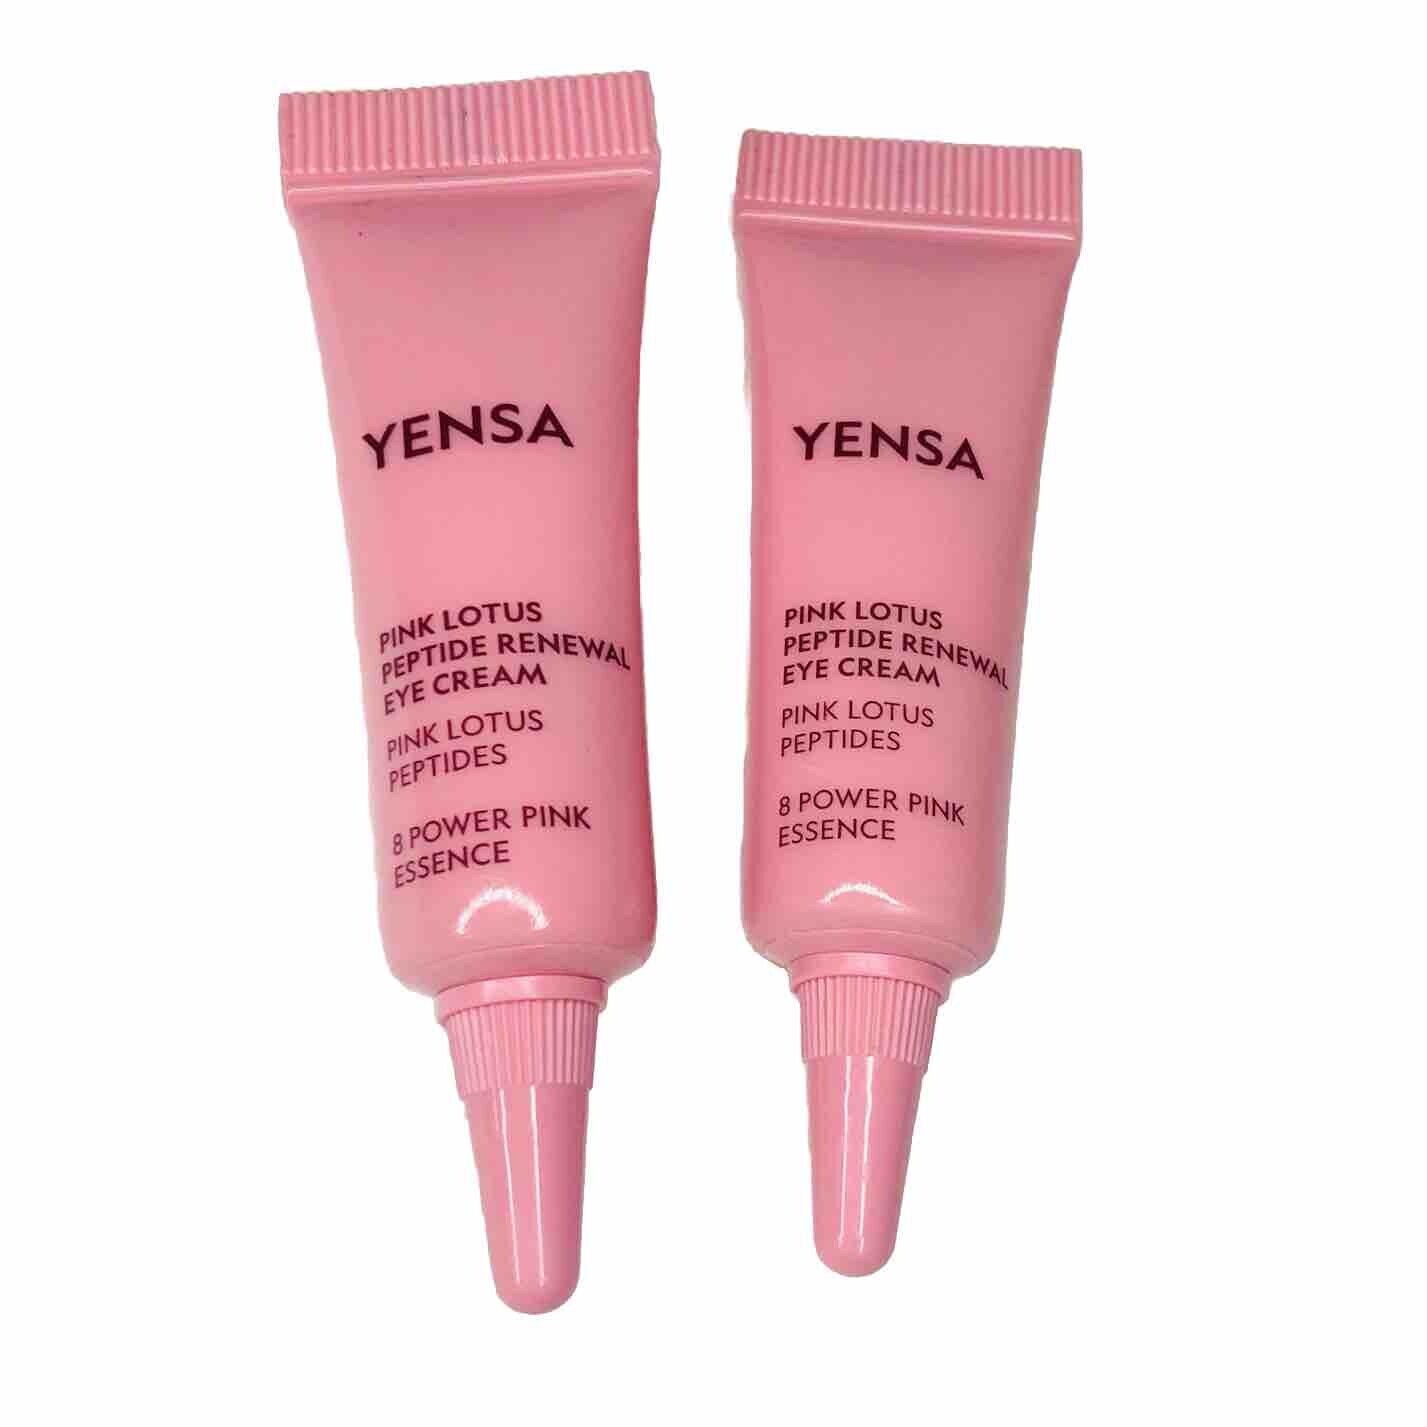 Set of 2 YENSA Pink Lotus Peptide Renewal Eye Cream Travel Size 0.17 oz NEW